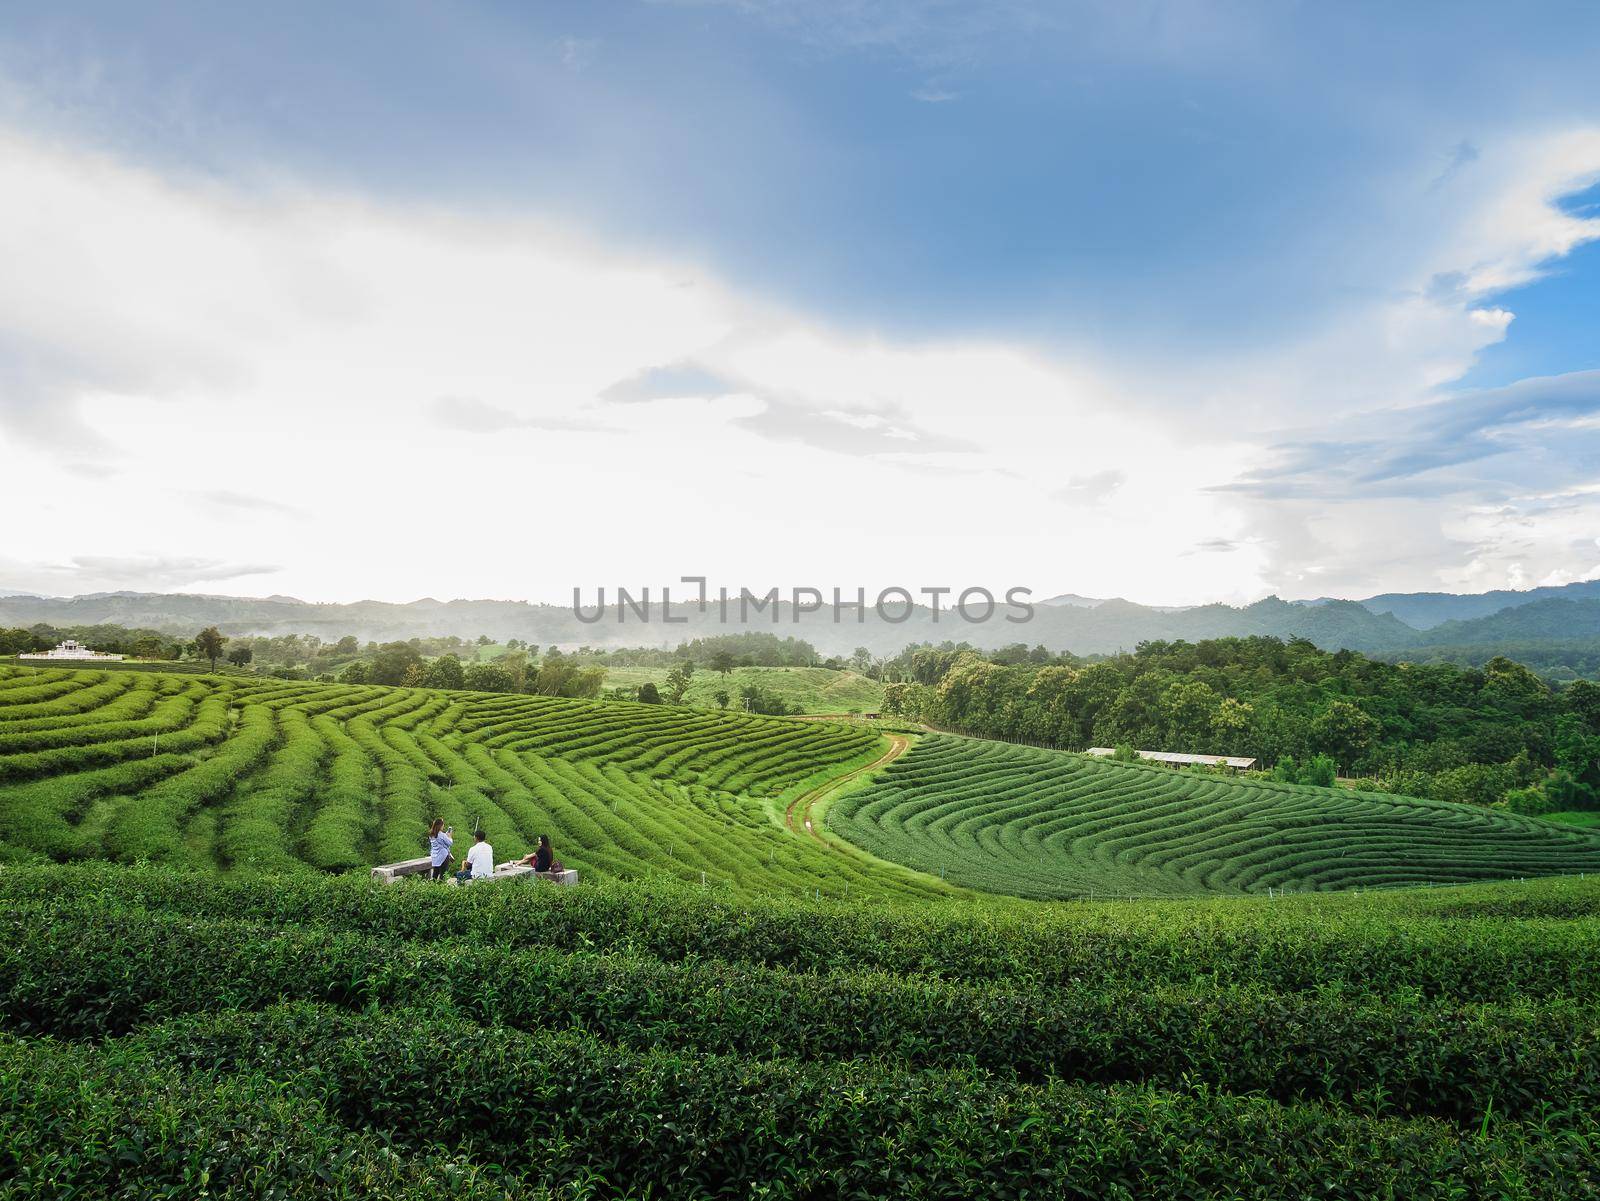 green tea farm at chiang rai, Thailand by Wmpix